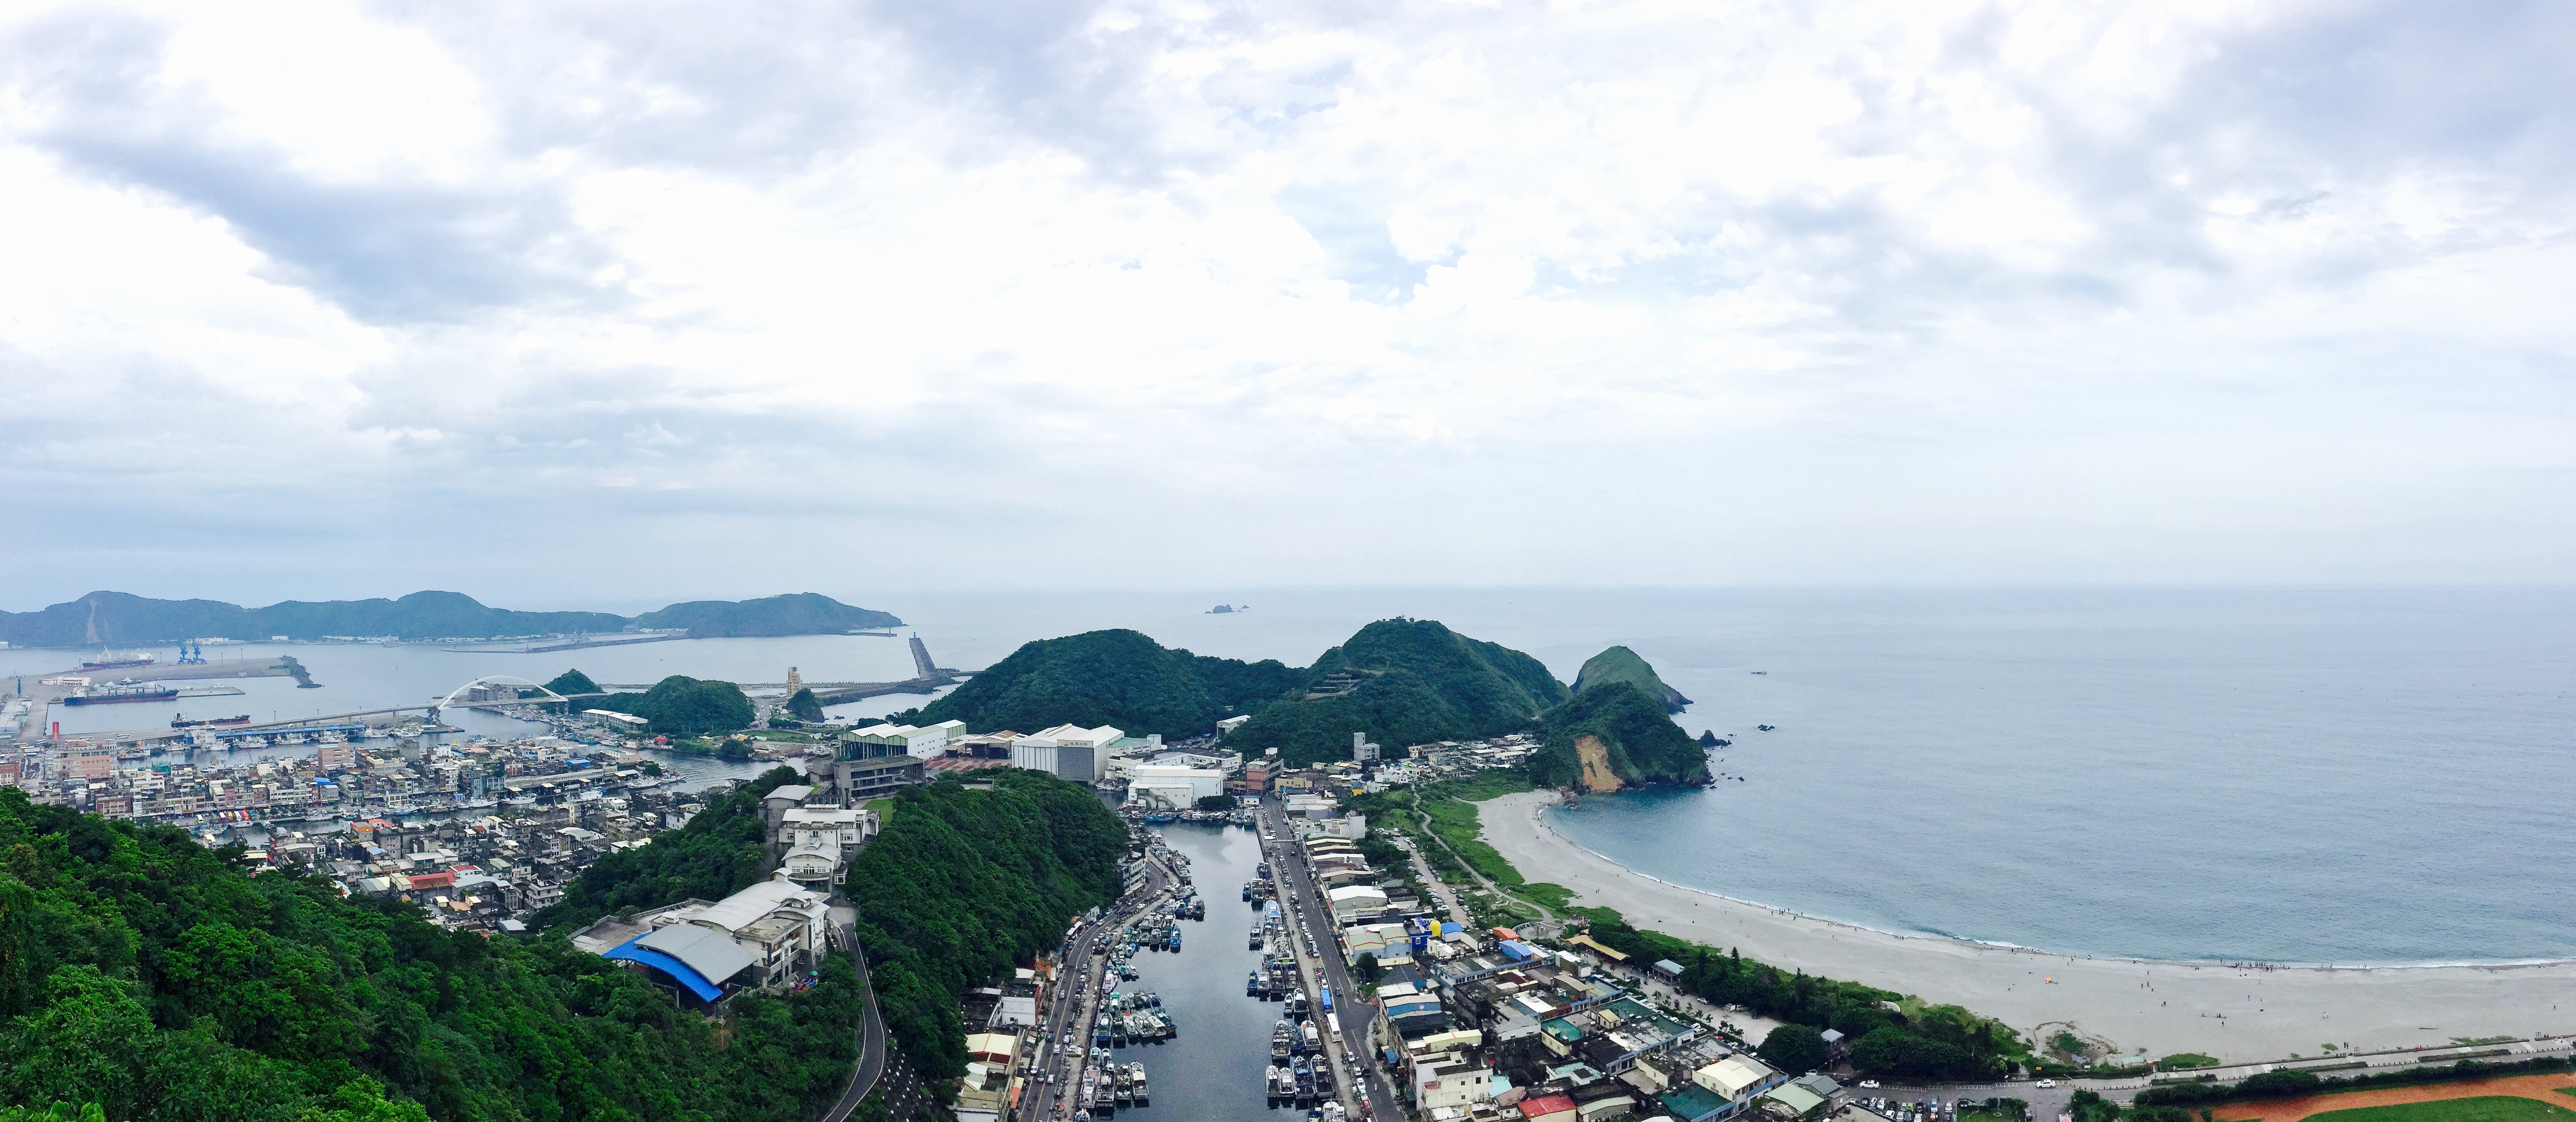 Nanfang'ao Panorama - Taken using iPhone 6